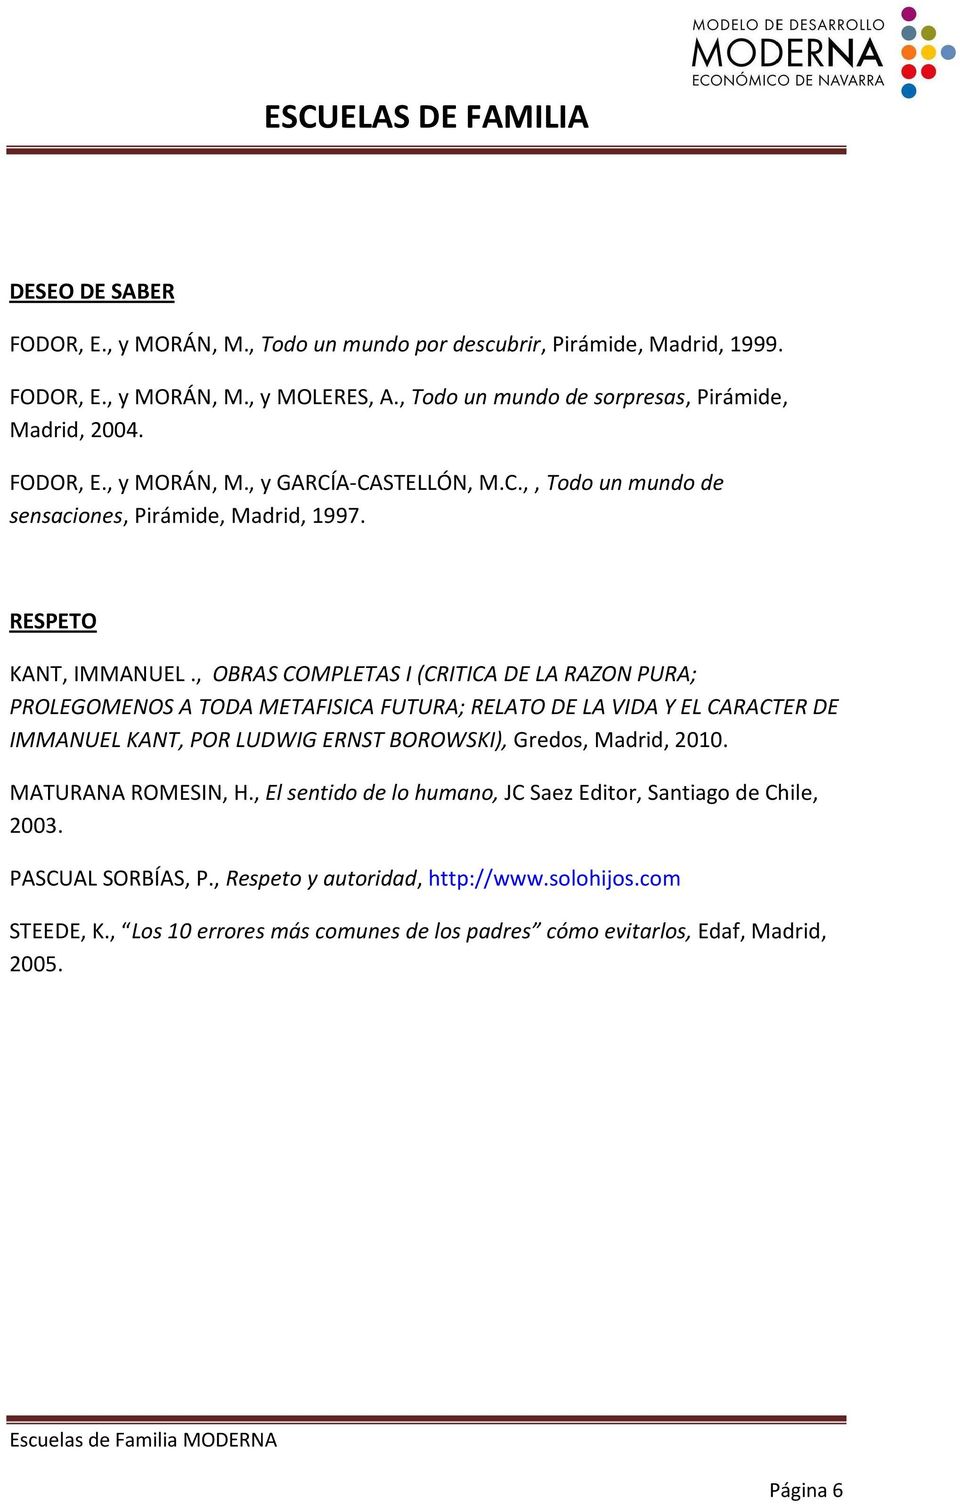 , OBRAS COMPLETAS I (CRITICA DE LA RAZON PURA; PROLEGOMENOS A TODA METAFISICA FUTURA; RELATO DE LA VIDA Y EL CARACTER DE IMMANUEL KANT, POR LUDWIG ERNST BOROWSKI), Gredos, Madrid, 2010.